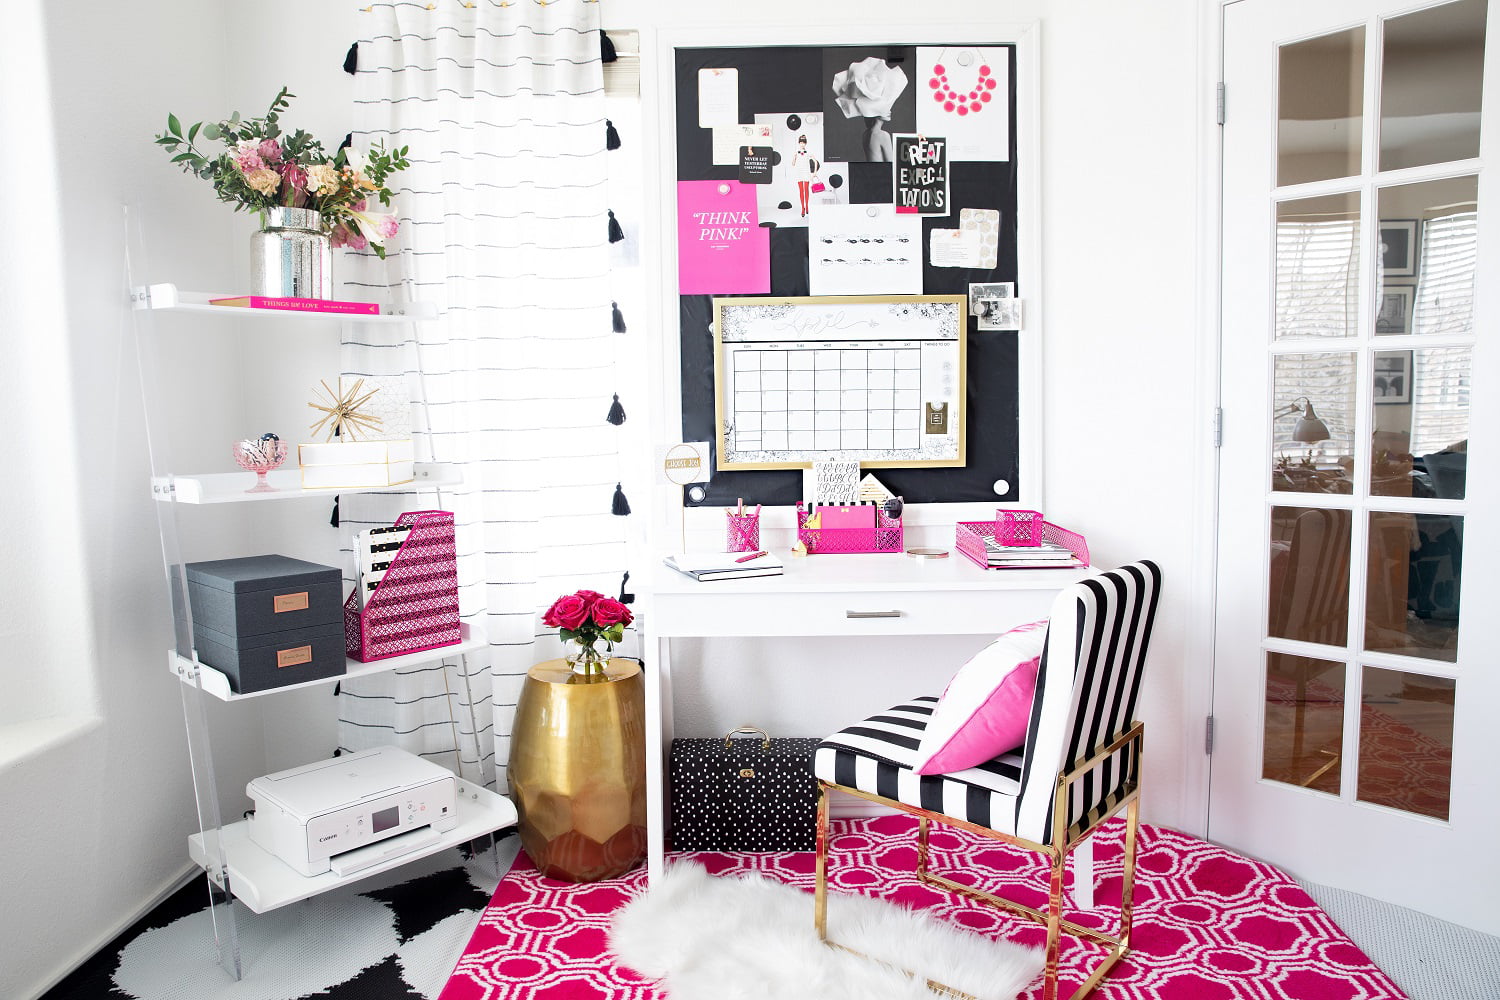 Pink Desk Accessories for Women-5 Piece Desk Organizer